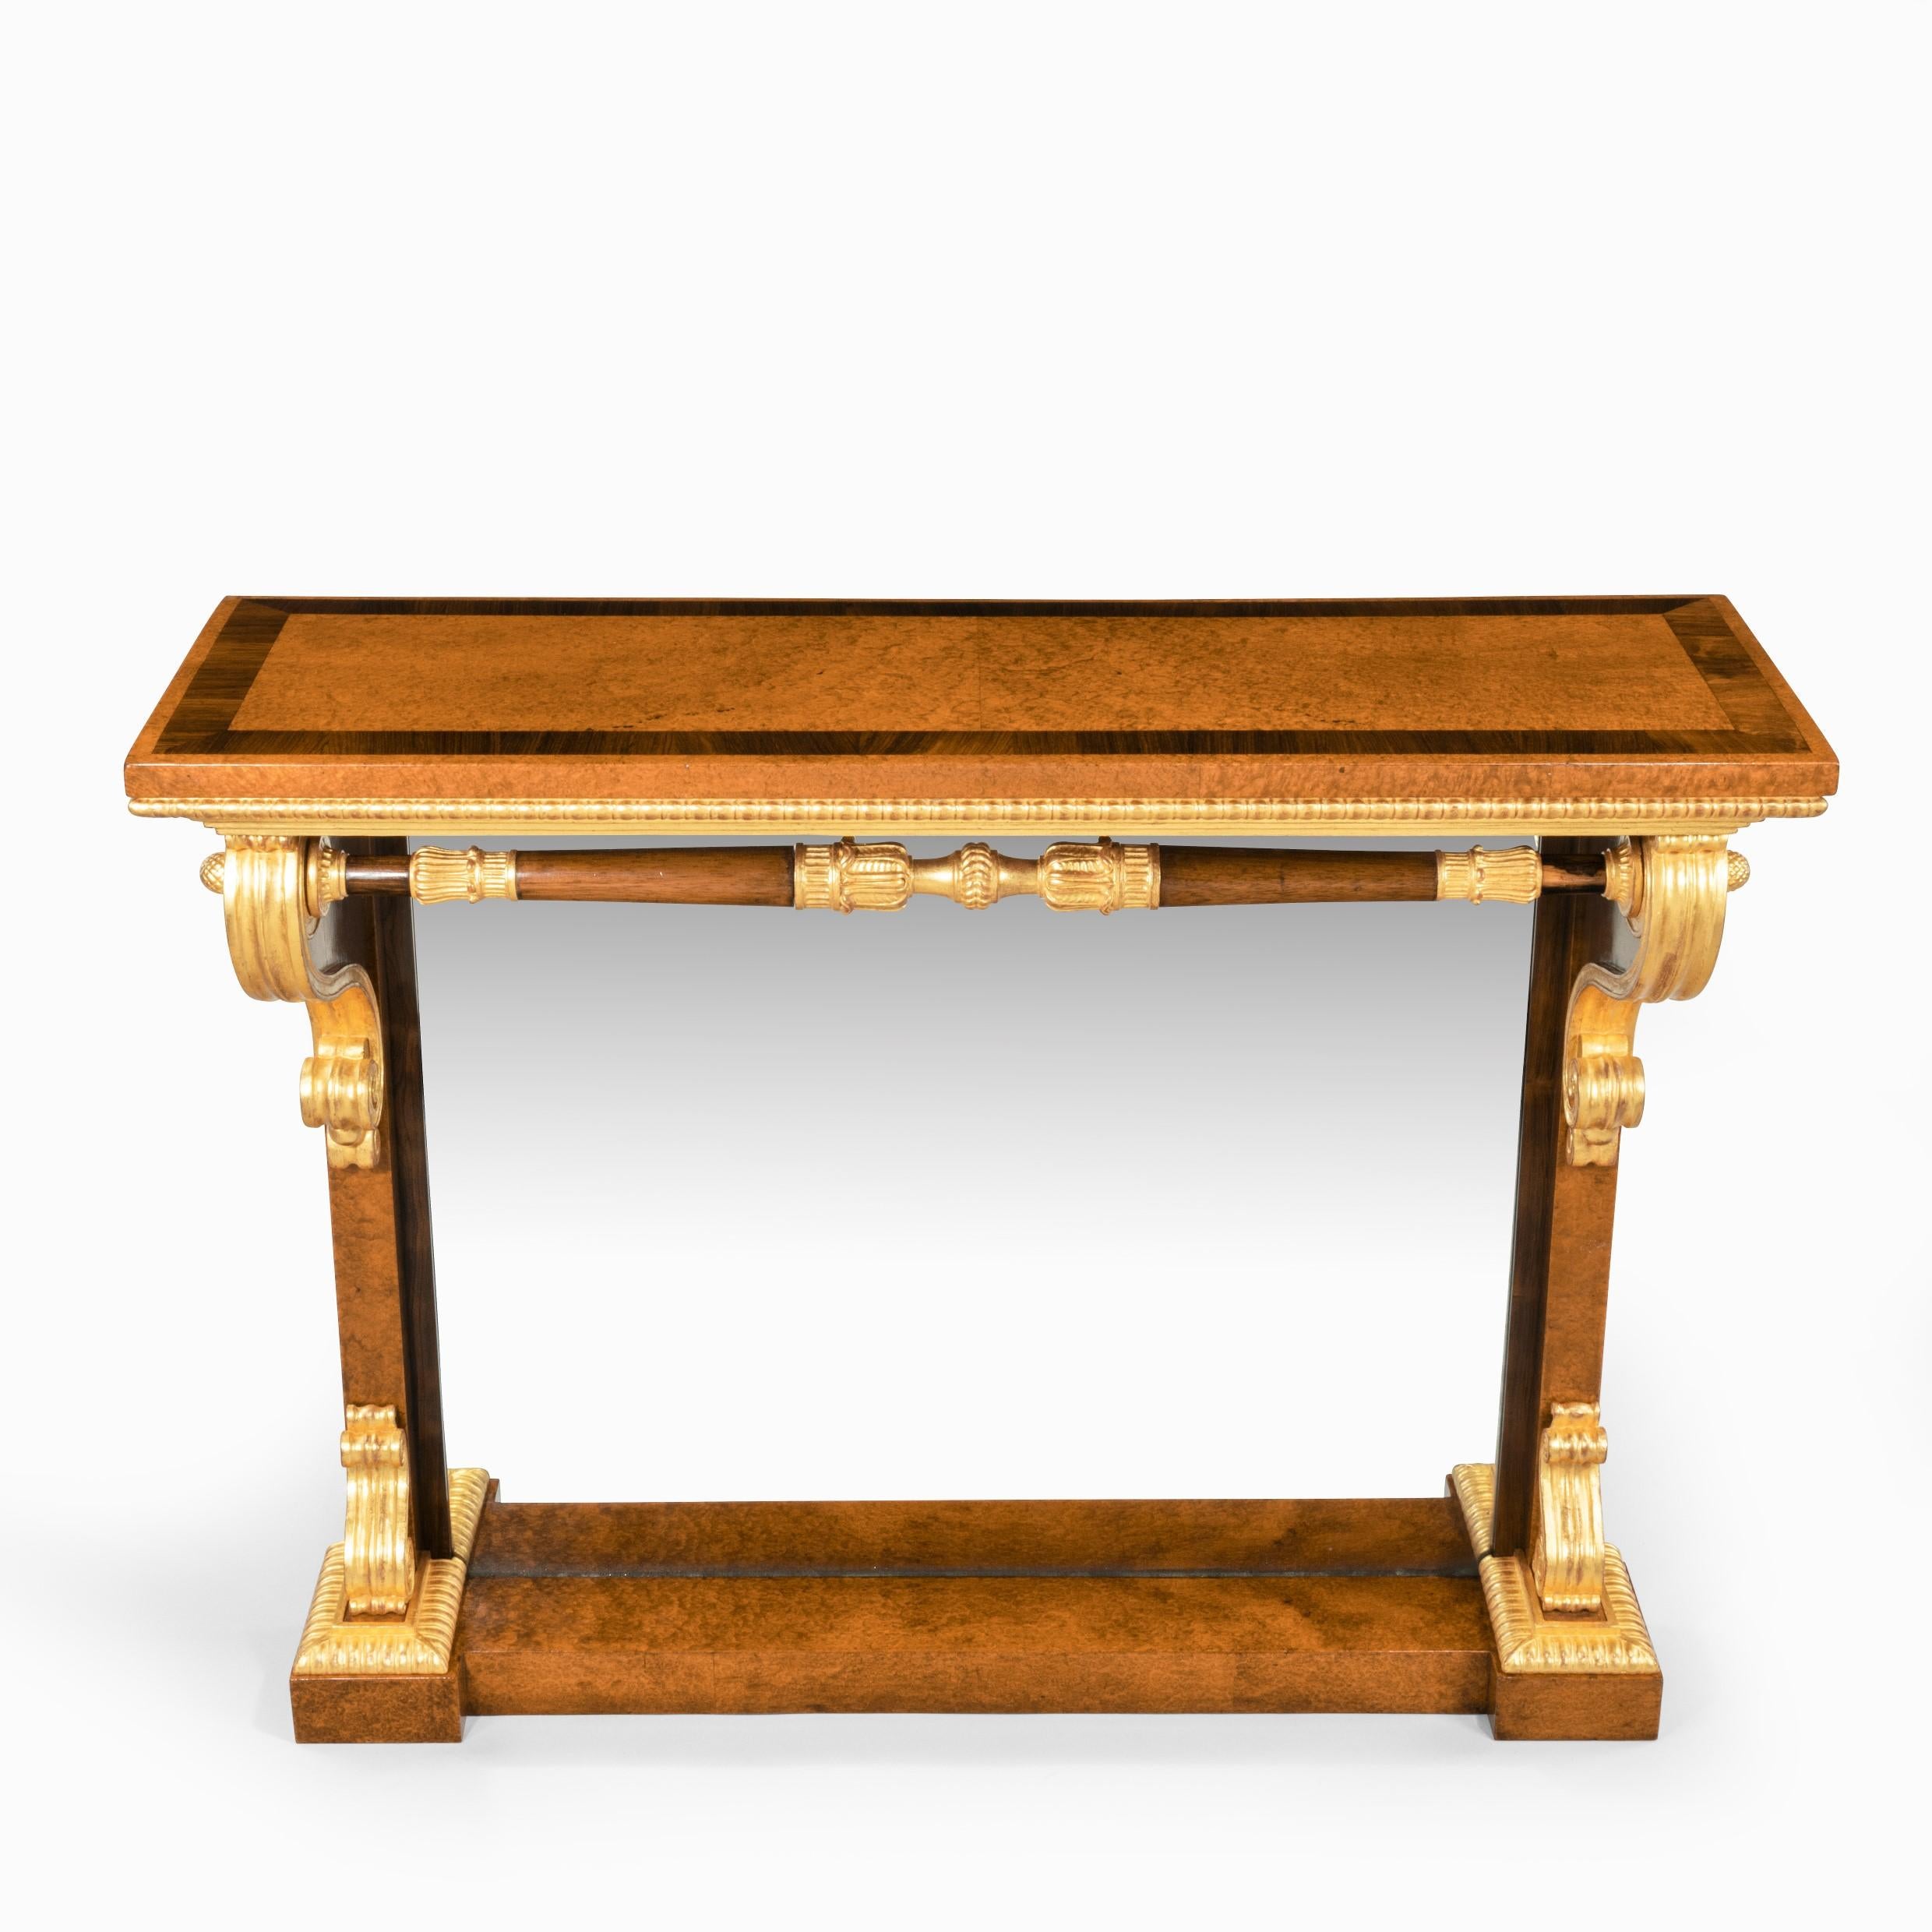 Magnifique table console en amboine, bois de rose et bois doré de style George IV, attribuée à Morel et Seddon, le plateau rectangulaire surmontant deux monopodes avec des corbeaux et des pieds en bois doré reliés par une civière tournée et